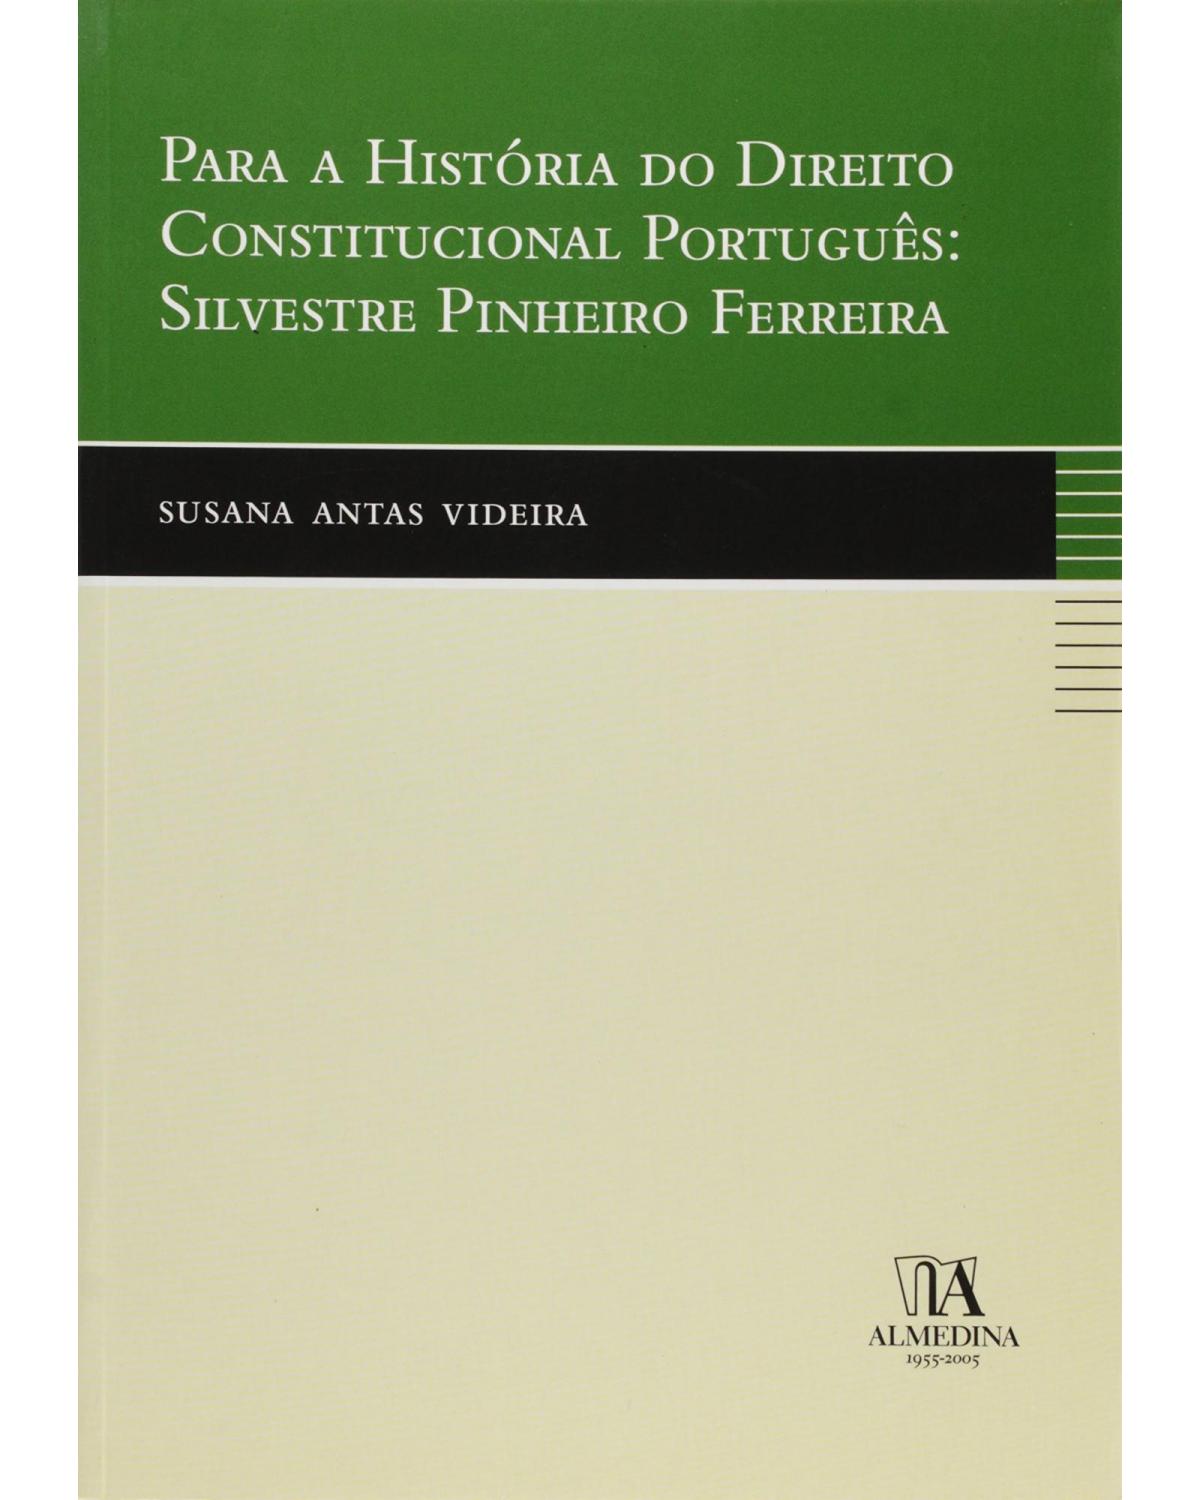 Para a história do direito constitucional português - Silvestre Pinheiro Ferreira - 1ª Edição | 2005